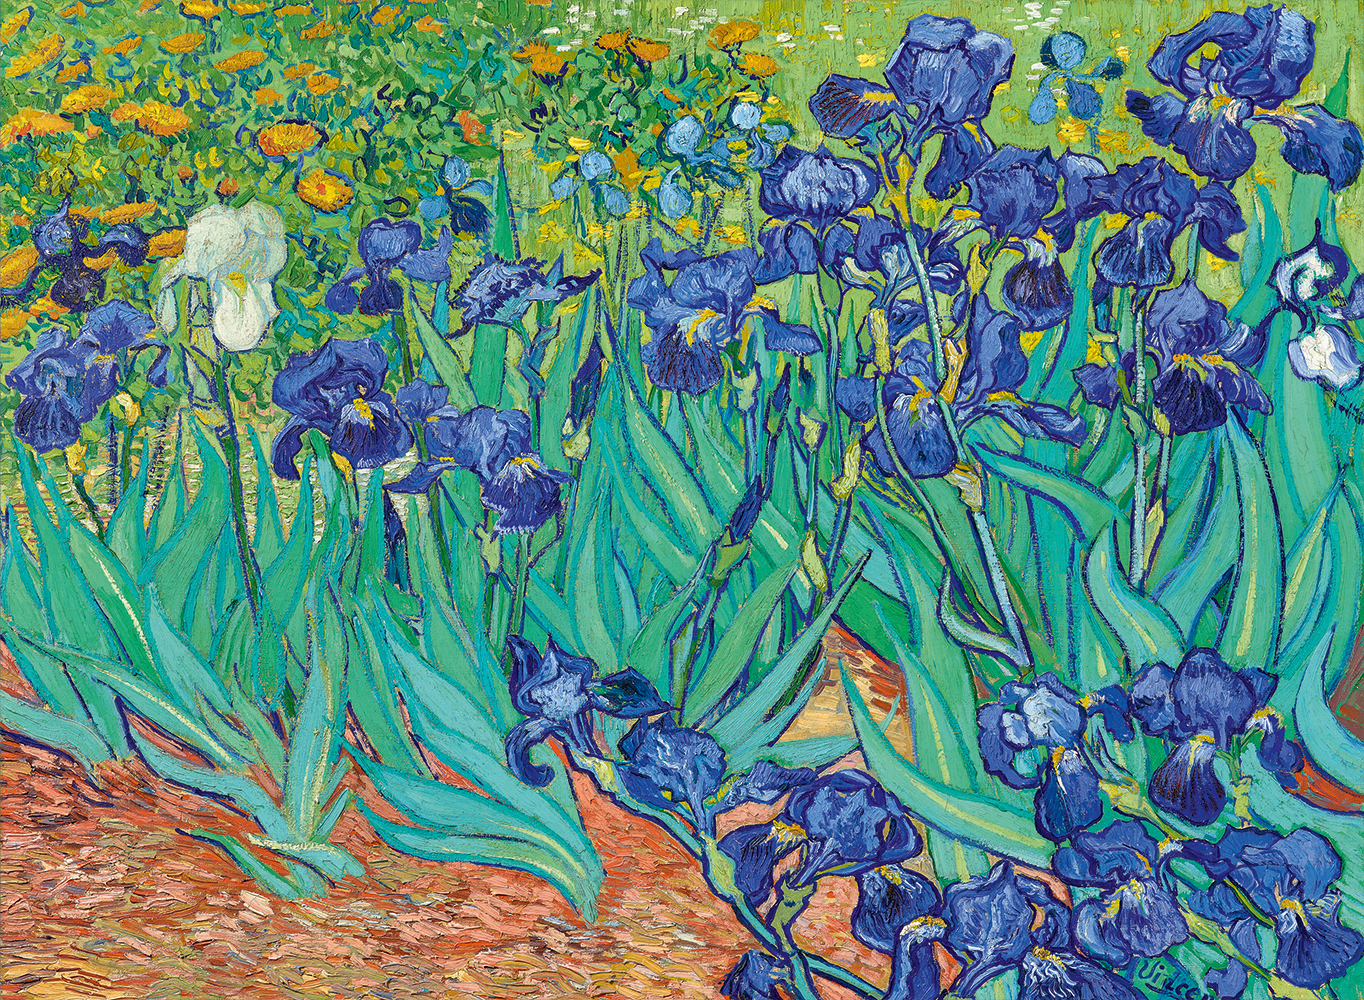 Bluebird Puzzle Vincent Van Gogh - Schwertlilien, 1889 3000 Teile Puzzle Art-by-Bluebird-60165